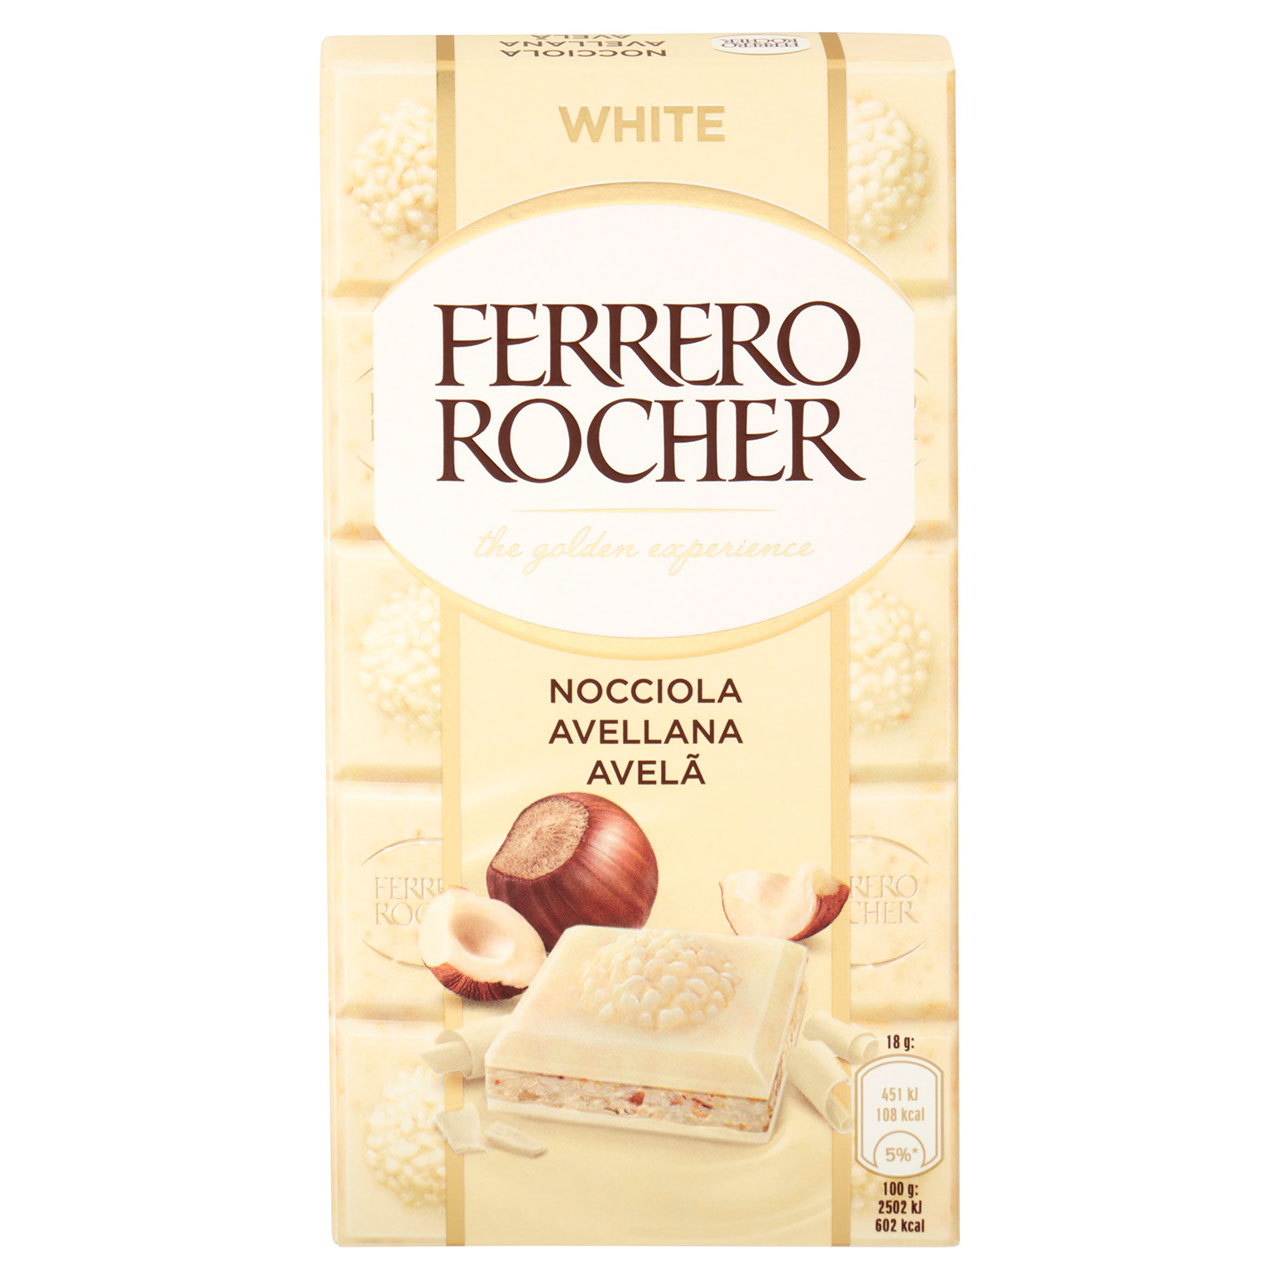 Ferrero Rocher White Nocciola 90 g